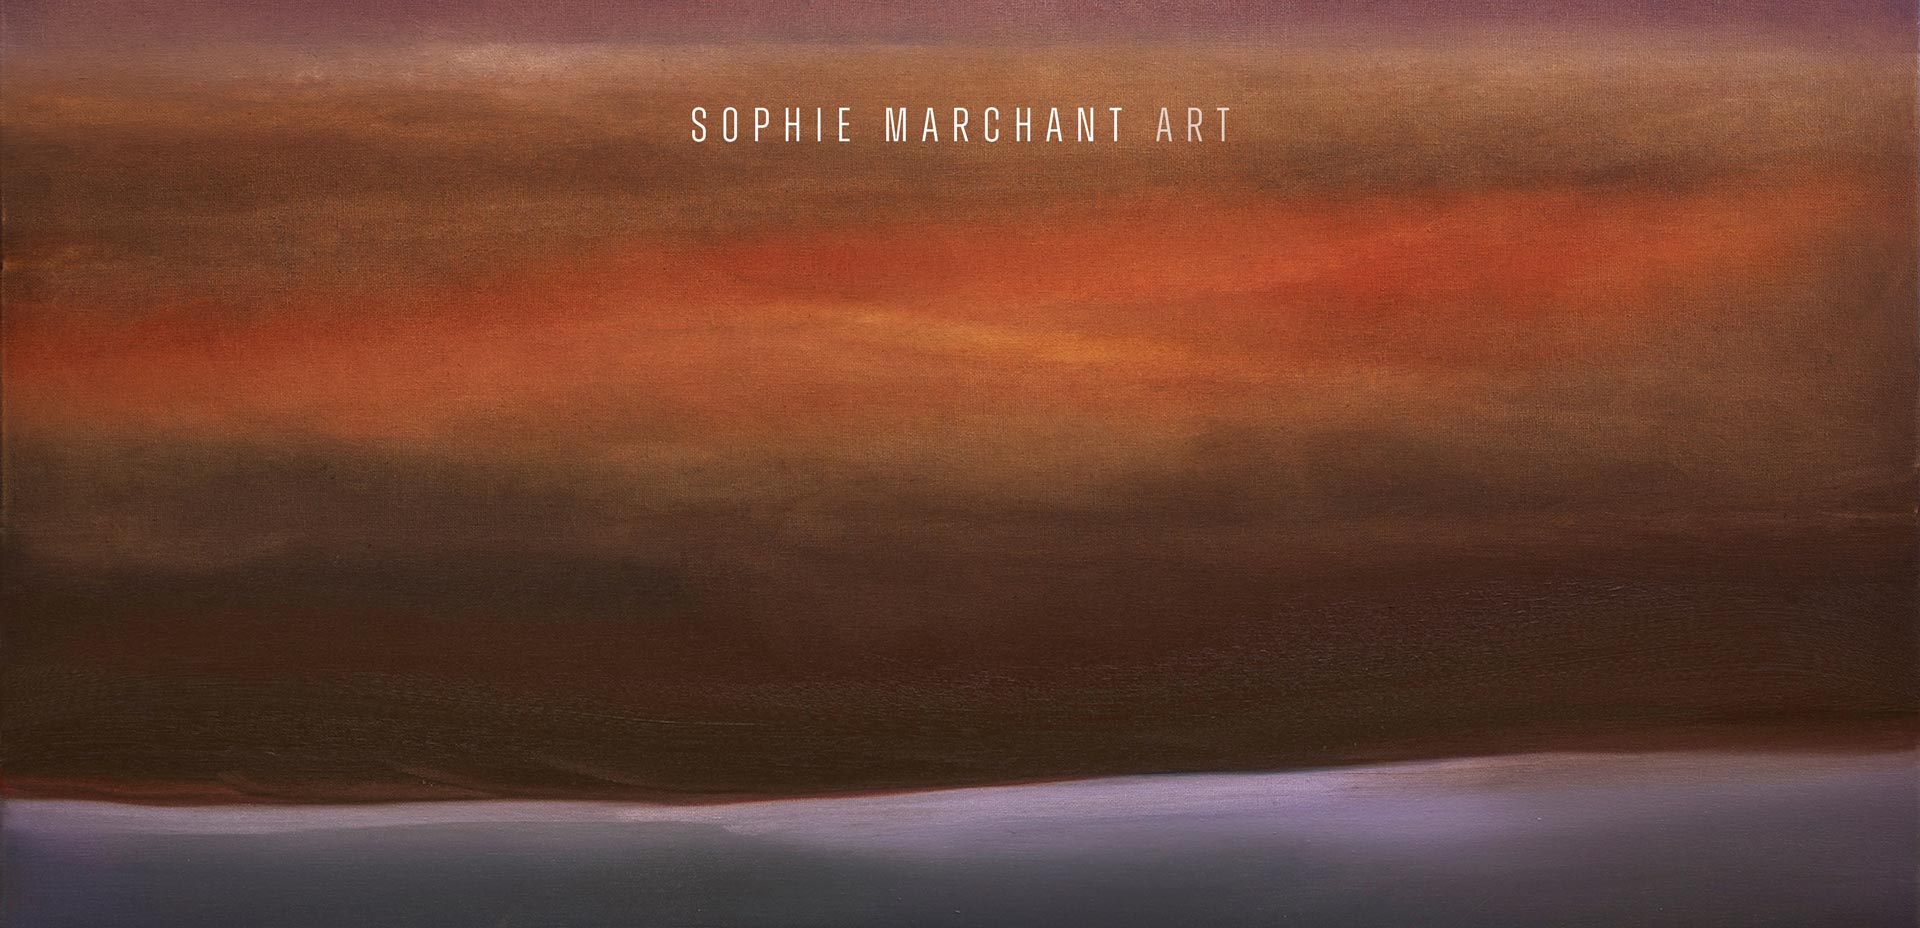 Sophie Marchant Art